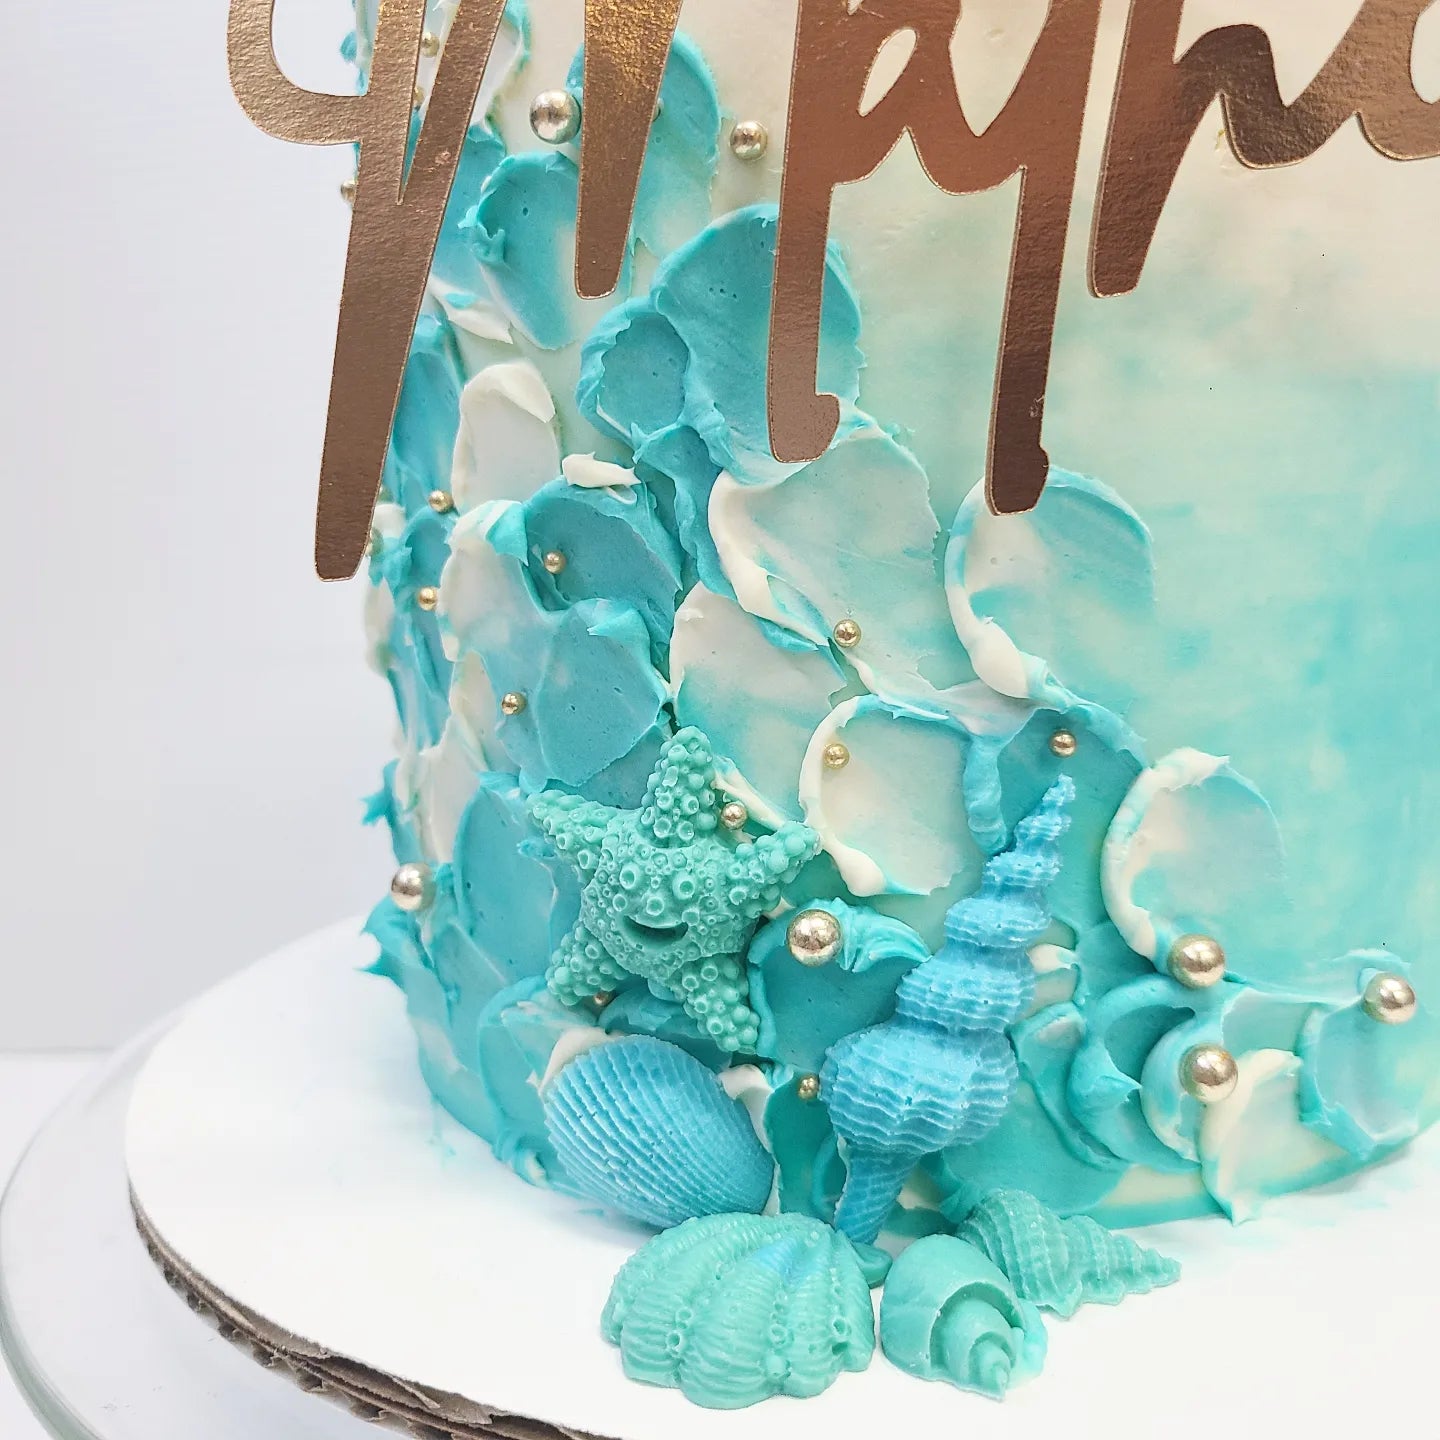 Cake with isomalt decoration - Decorated Cake by RekaBL86 - CakesDecor